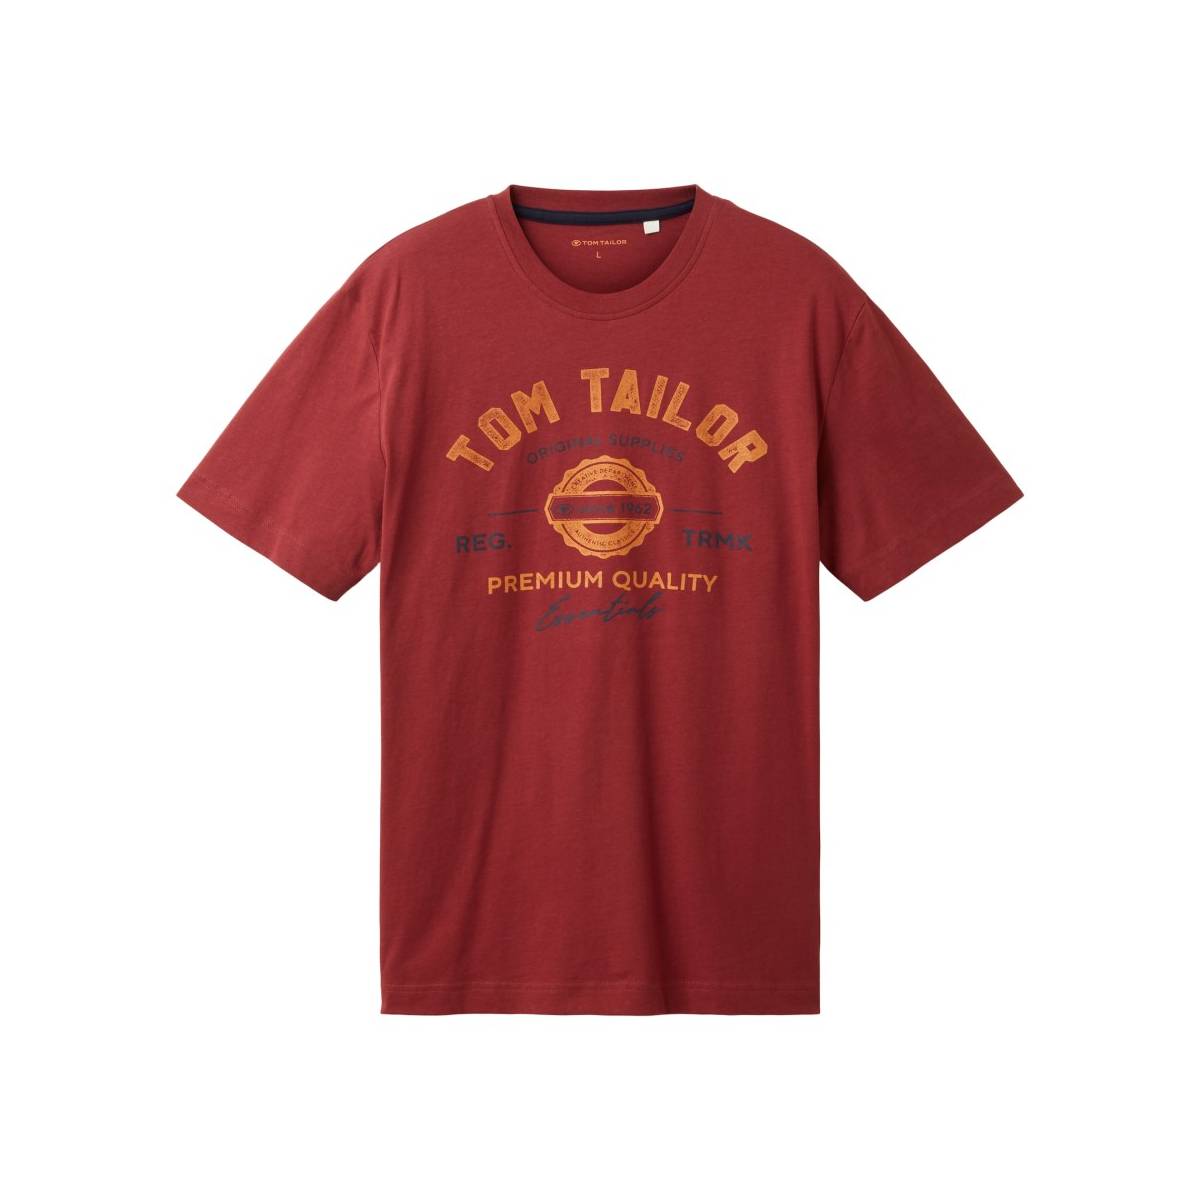 TOM TAILOR  t shirts donker rood -  model 1037735 - Herenkleding t shirts rood